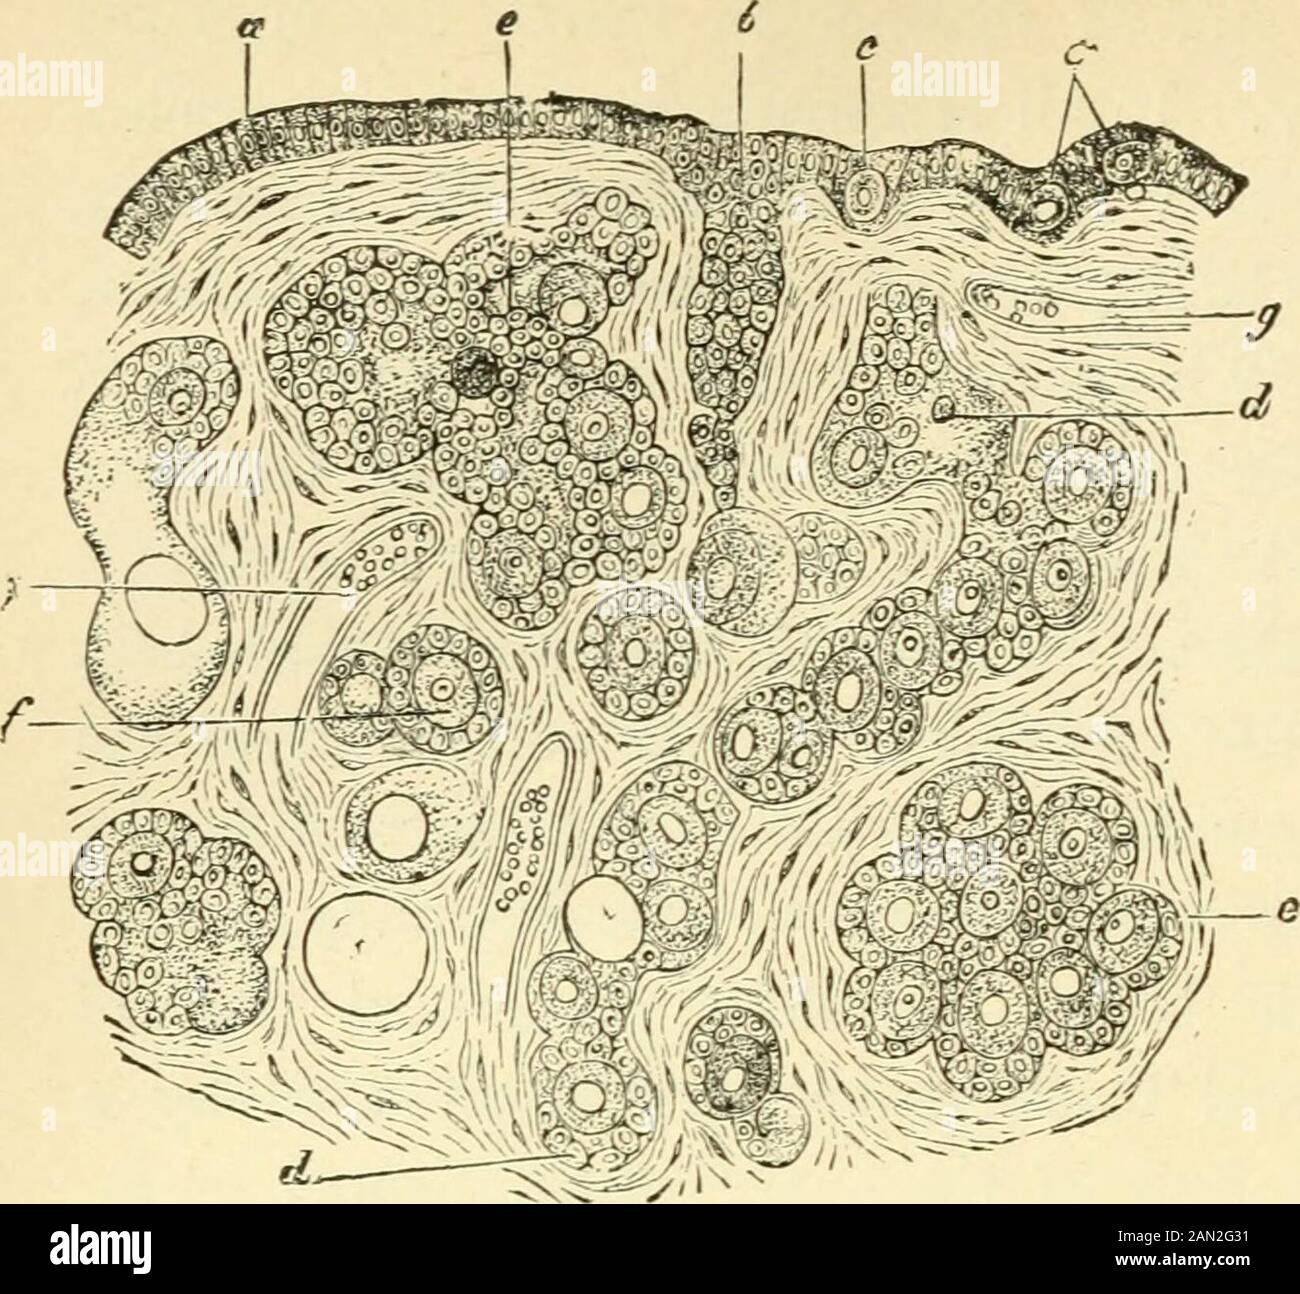 L'evoluzione dell'uomo: Una popolare esposizione dei principali punti di ontogenia umana e filogenoFrom il tedesco di Ernst Haeckel. Vasi sanguigni, e circondato da acell-strato (l'epitelio dell'ovaio, o il germe-epitelio femminile). Da questo epitelio, corde di cellule che crescono verso l'interno, nel tessuto connettivo o stroma del theovary (Fig. 330, A, h). Le cellule singole di queste corde aumentano la dimensione e diventano cellule-uovo (uova primitive, A, c); ma il numero più grande delle cellule rimangono piccole e formano uno strato cellulare anveling e nutritivo (il follicolo-epi-elio) intorno ad ogni uovo. Nei Mammiferi Th Foto Stock